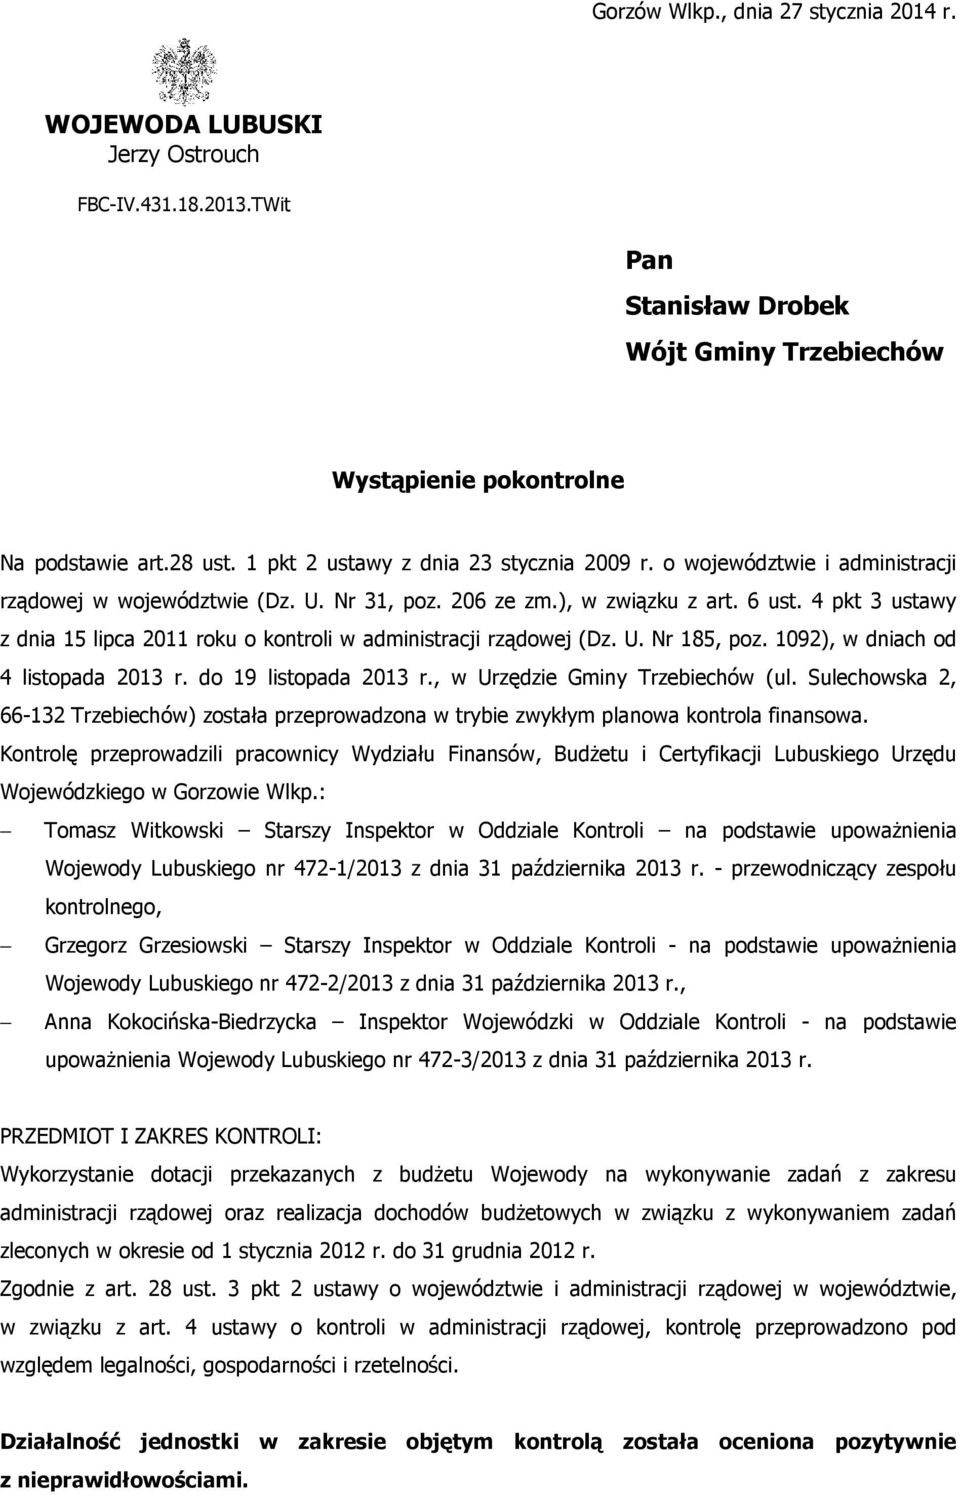 4 pkt 3 ustawy z dnia 15 lipca 2011 roku o kontroli w administracji rządowej (Dz. U. Nr 185, poz. 1092), w dniach od 4 listopada 2013 r. do 19 listopada 2013 r., w Urzędzie Gminy Trzebiechów (ul.